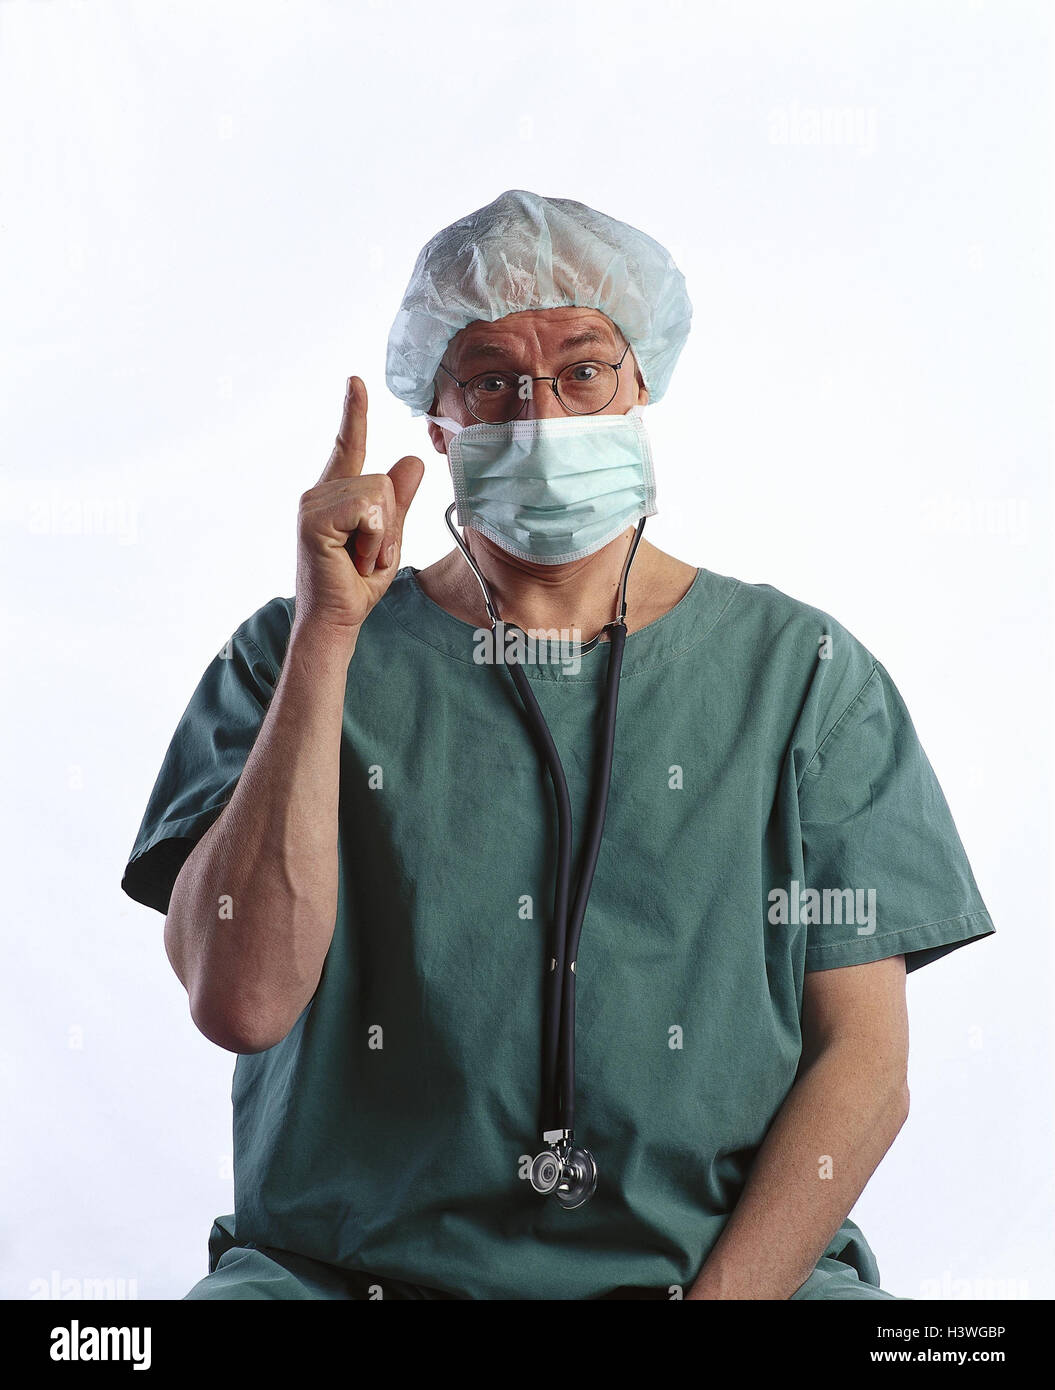 Op. doctor, gesture, warning, half portrait, doctor, surgeon